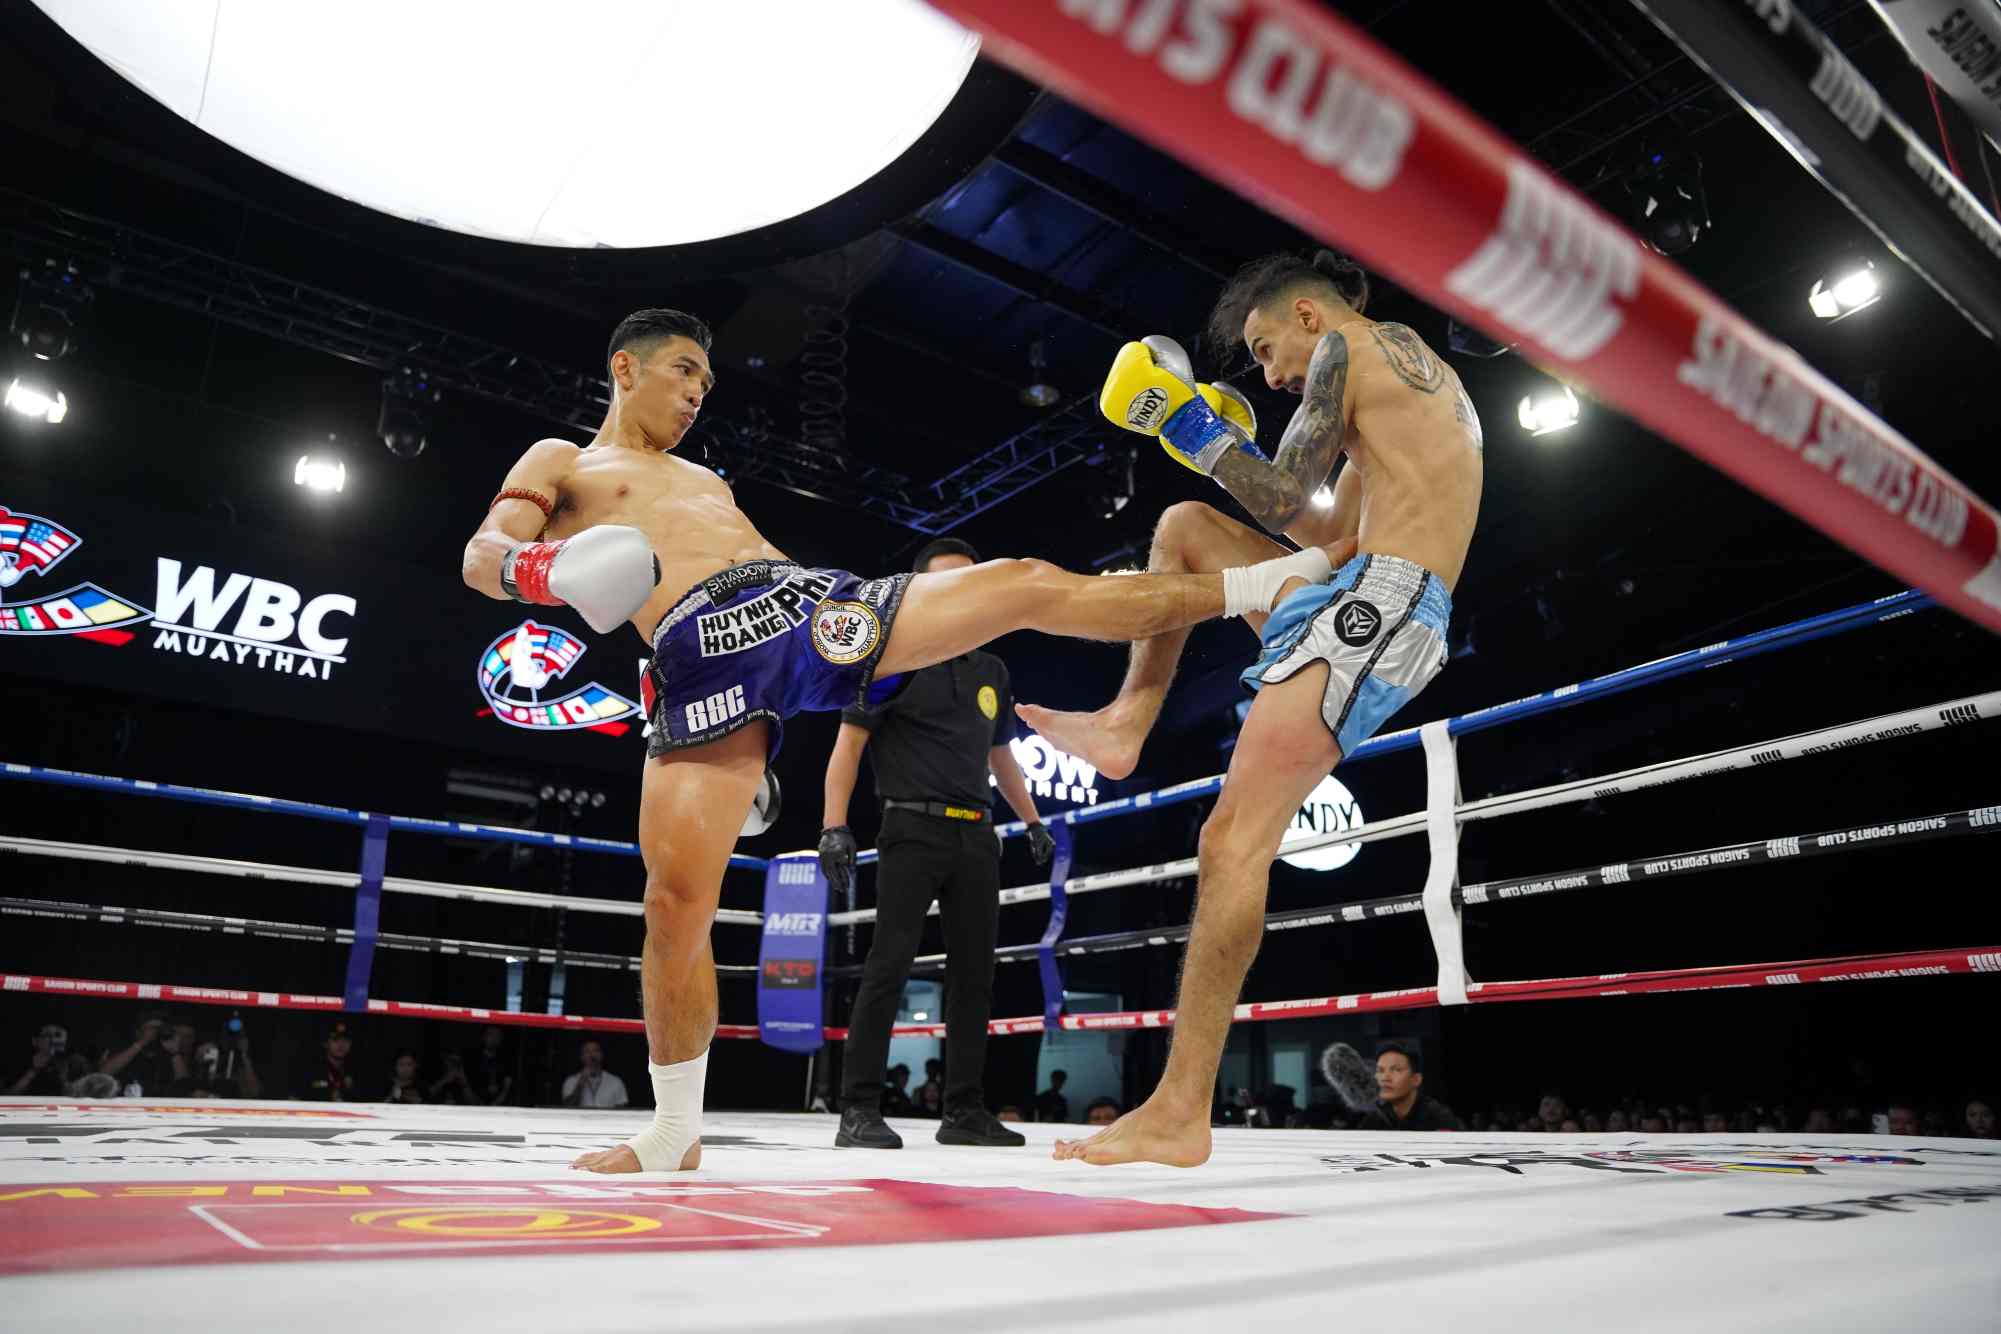 Huỳnh Hoàng Phi thắng ấn tượng võ sĩ Maroc để có được danh hiệu WBC Muay Thai quốc tế lần đầu tiên trong sự nghiệp. Ảnh: Thu Trang